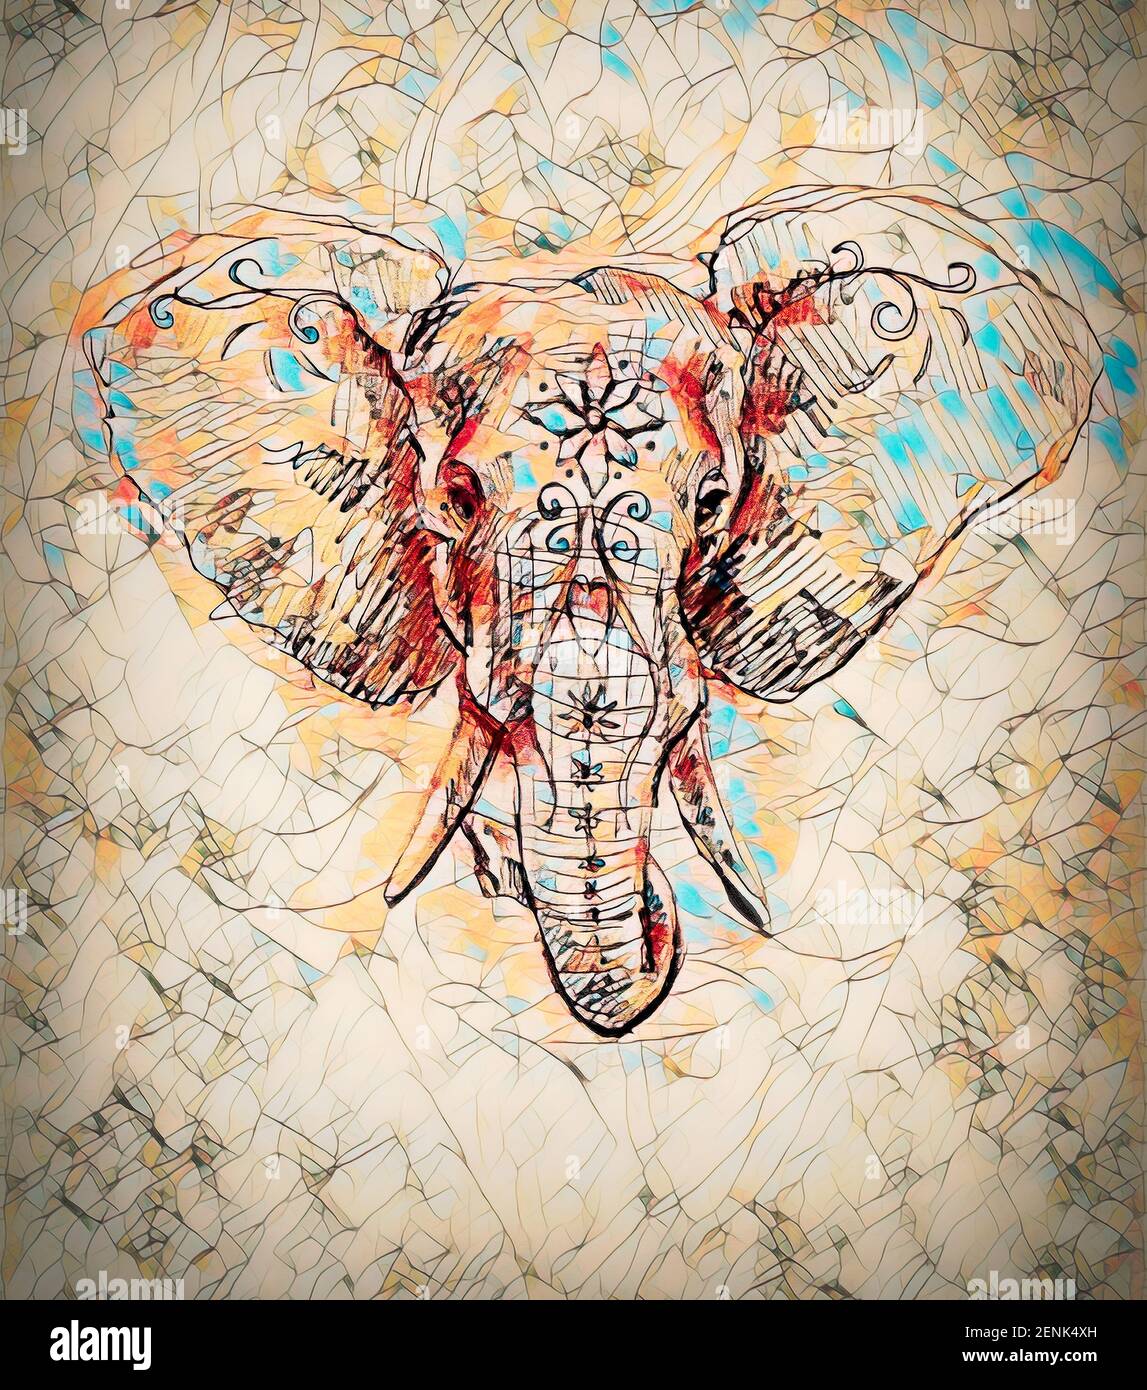 Elephant con ornamenti floreali, disegno a matita su carta. Effetto colore e Computer collage. Foto Stock